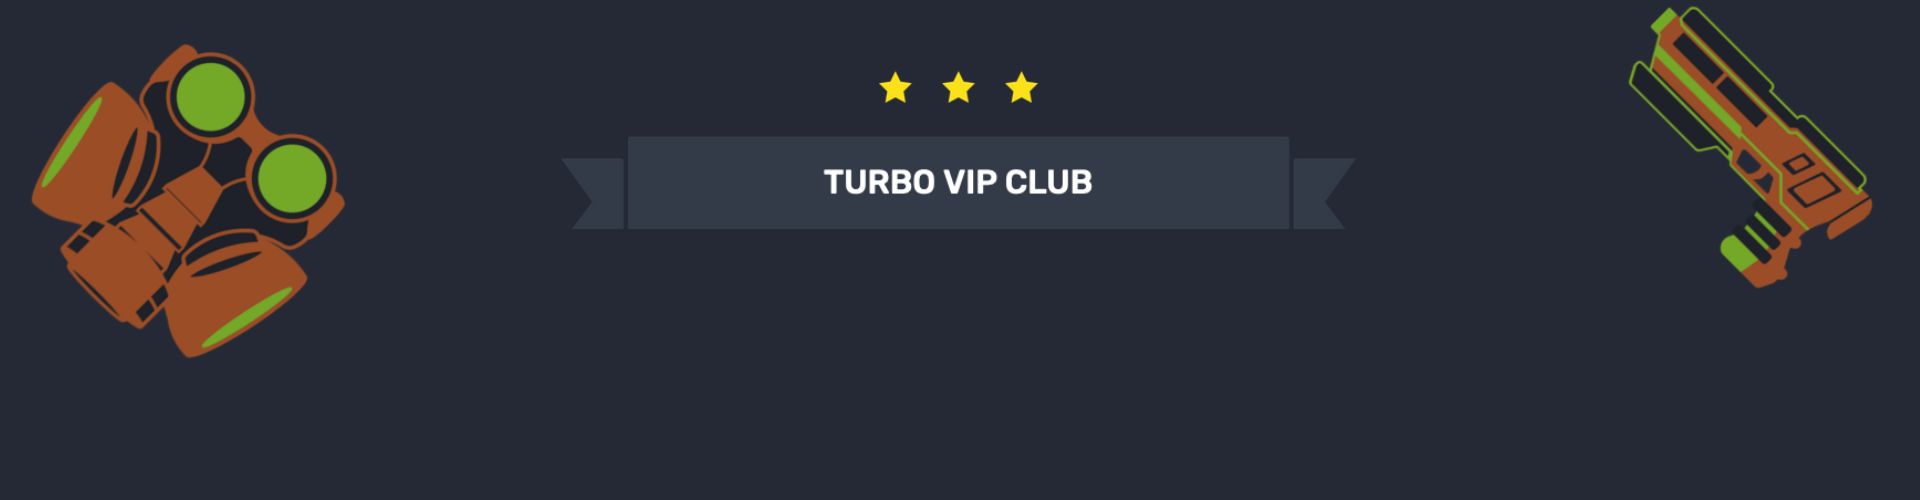 Программа лояльности на Turbo casino